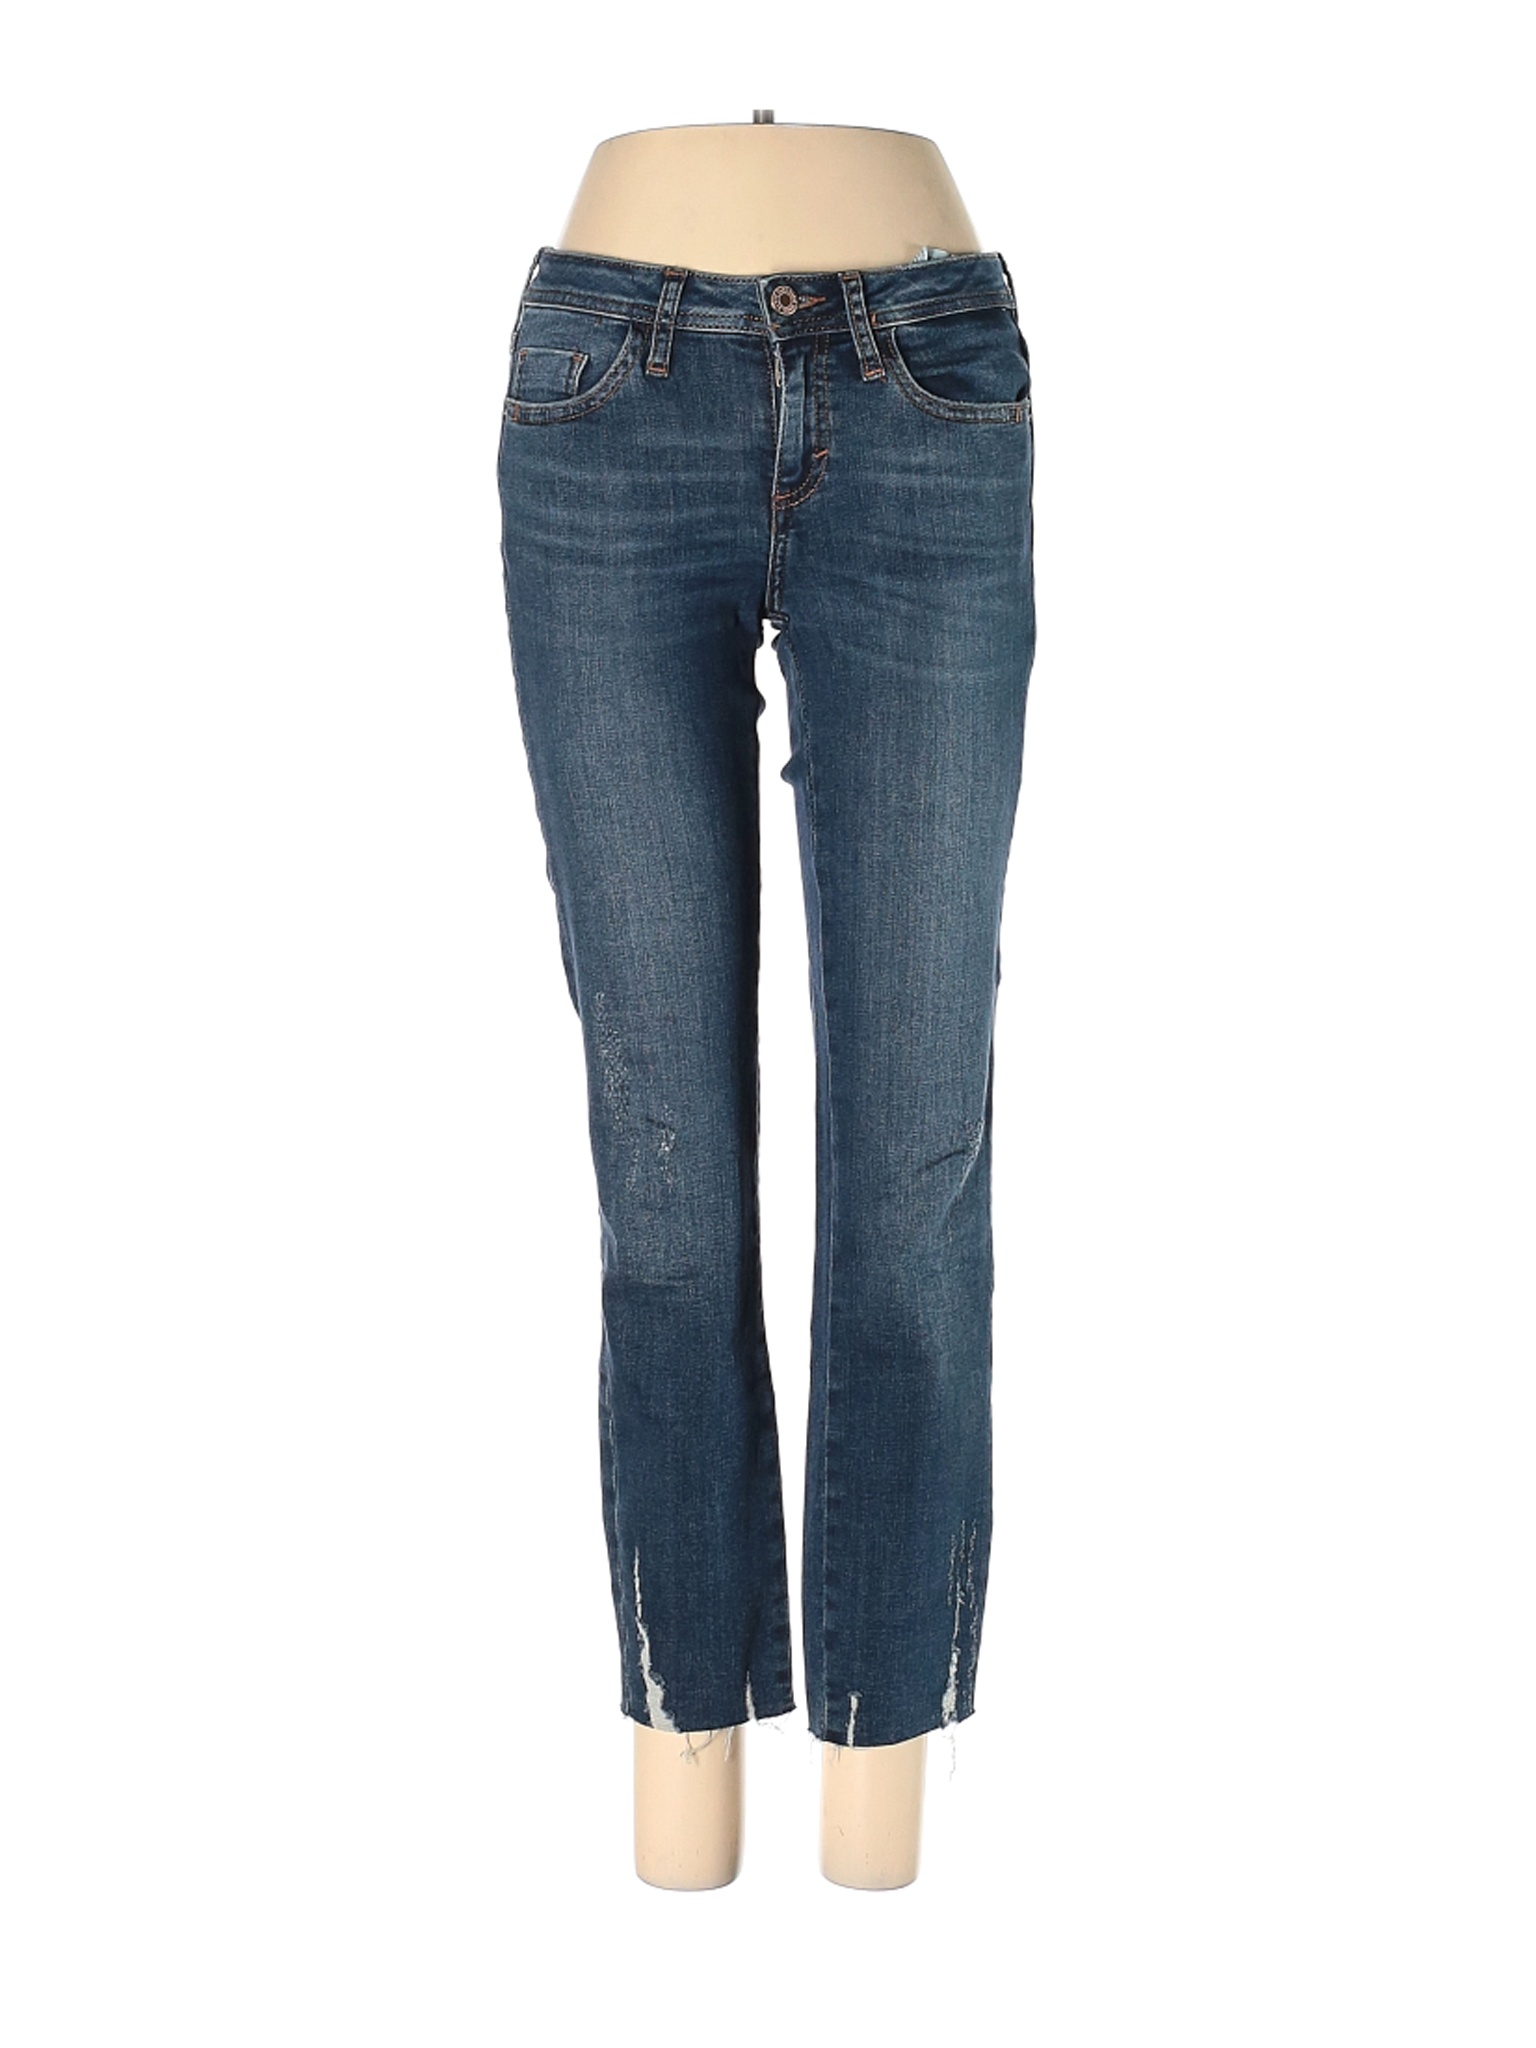 Zara Women Blue Jeans 2 | eBay